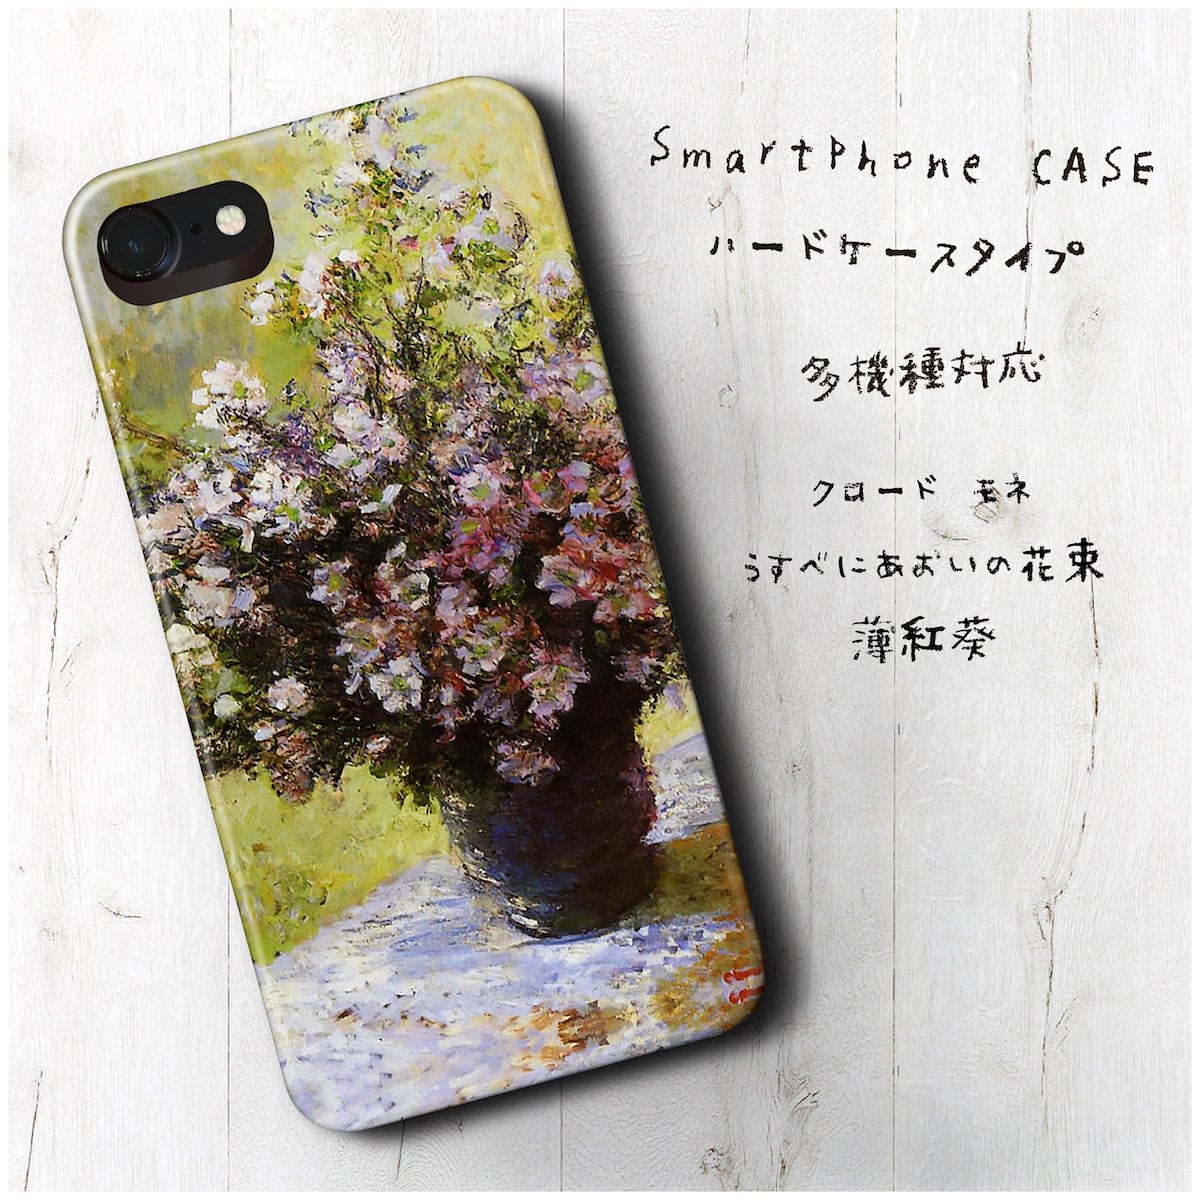 iPhone6s ケース iPhone6 スマホケース 人気 あいふぉん トレンド クロード モネ うすべにあおいの花束 薄紅葵